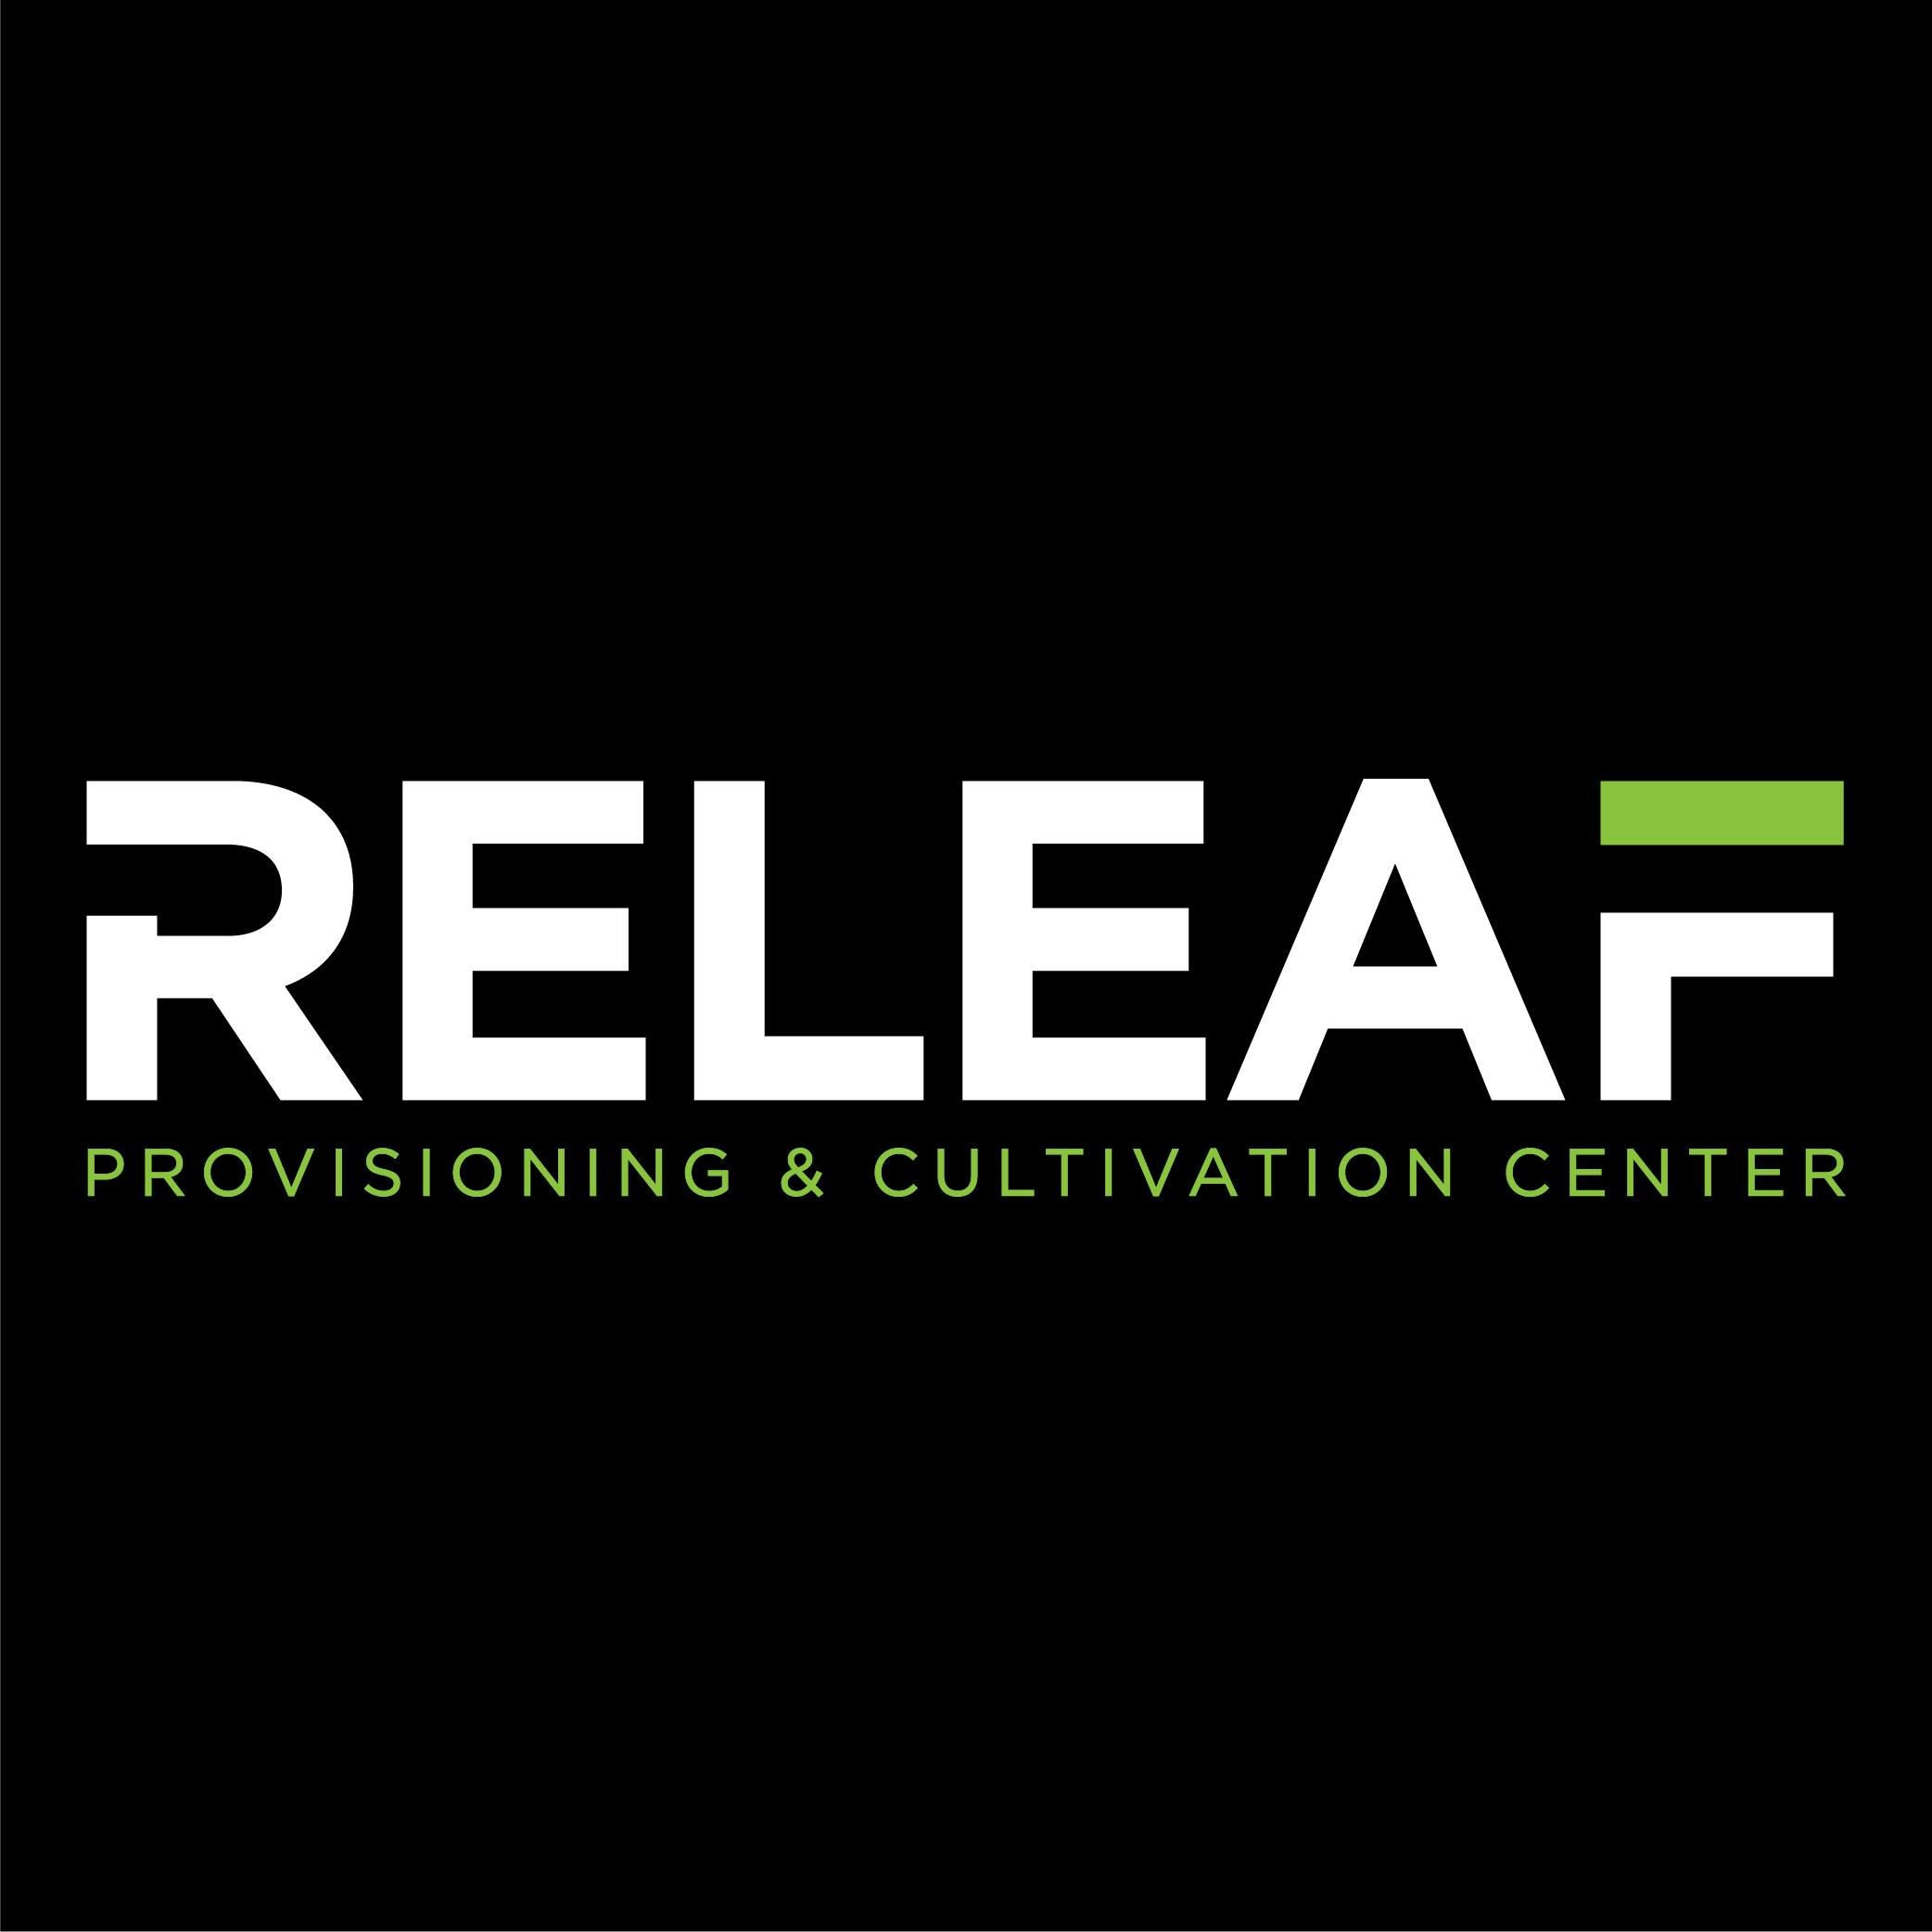 Wayne Releaf Provisioning & Cultivation Center-logo